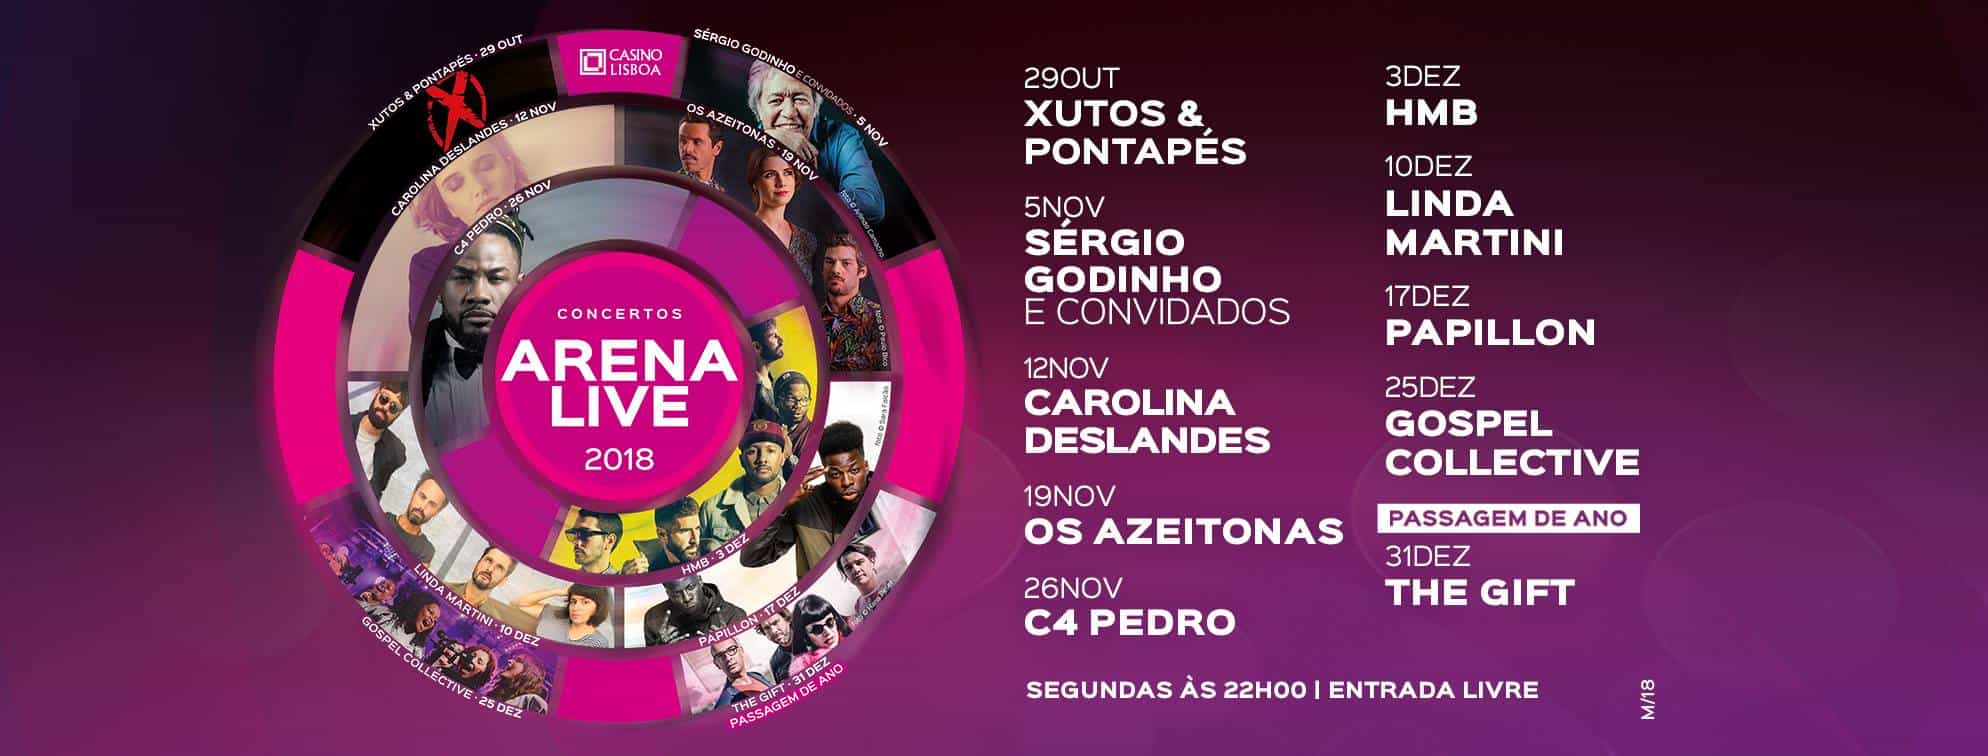 Os fantásticos concertos ARENA LIVE 2018 estão de volta ao Casino Lisboa